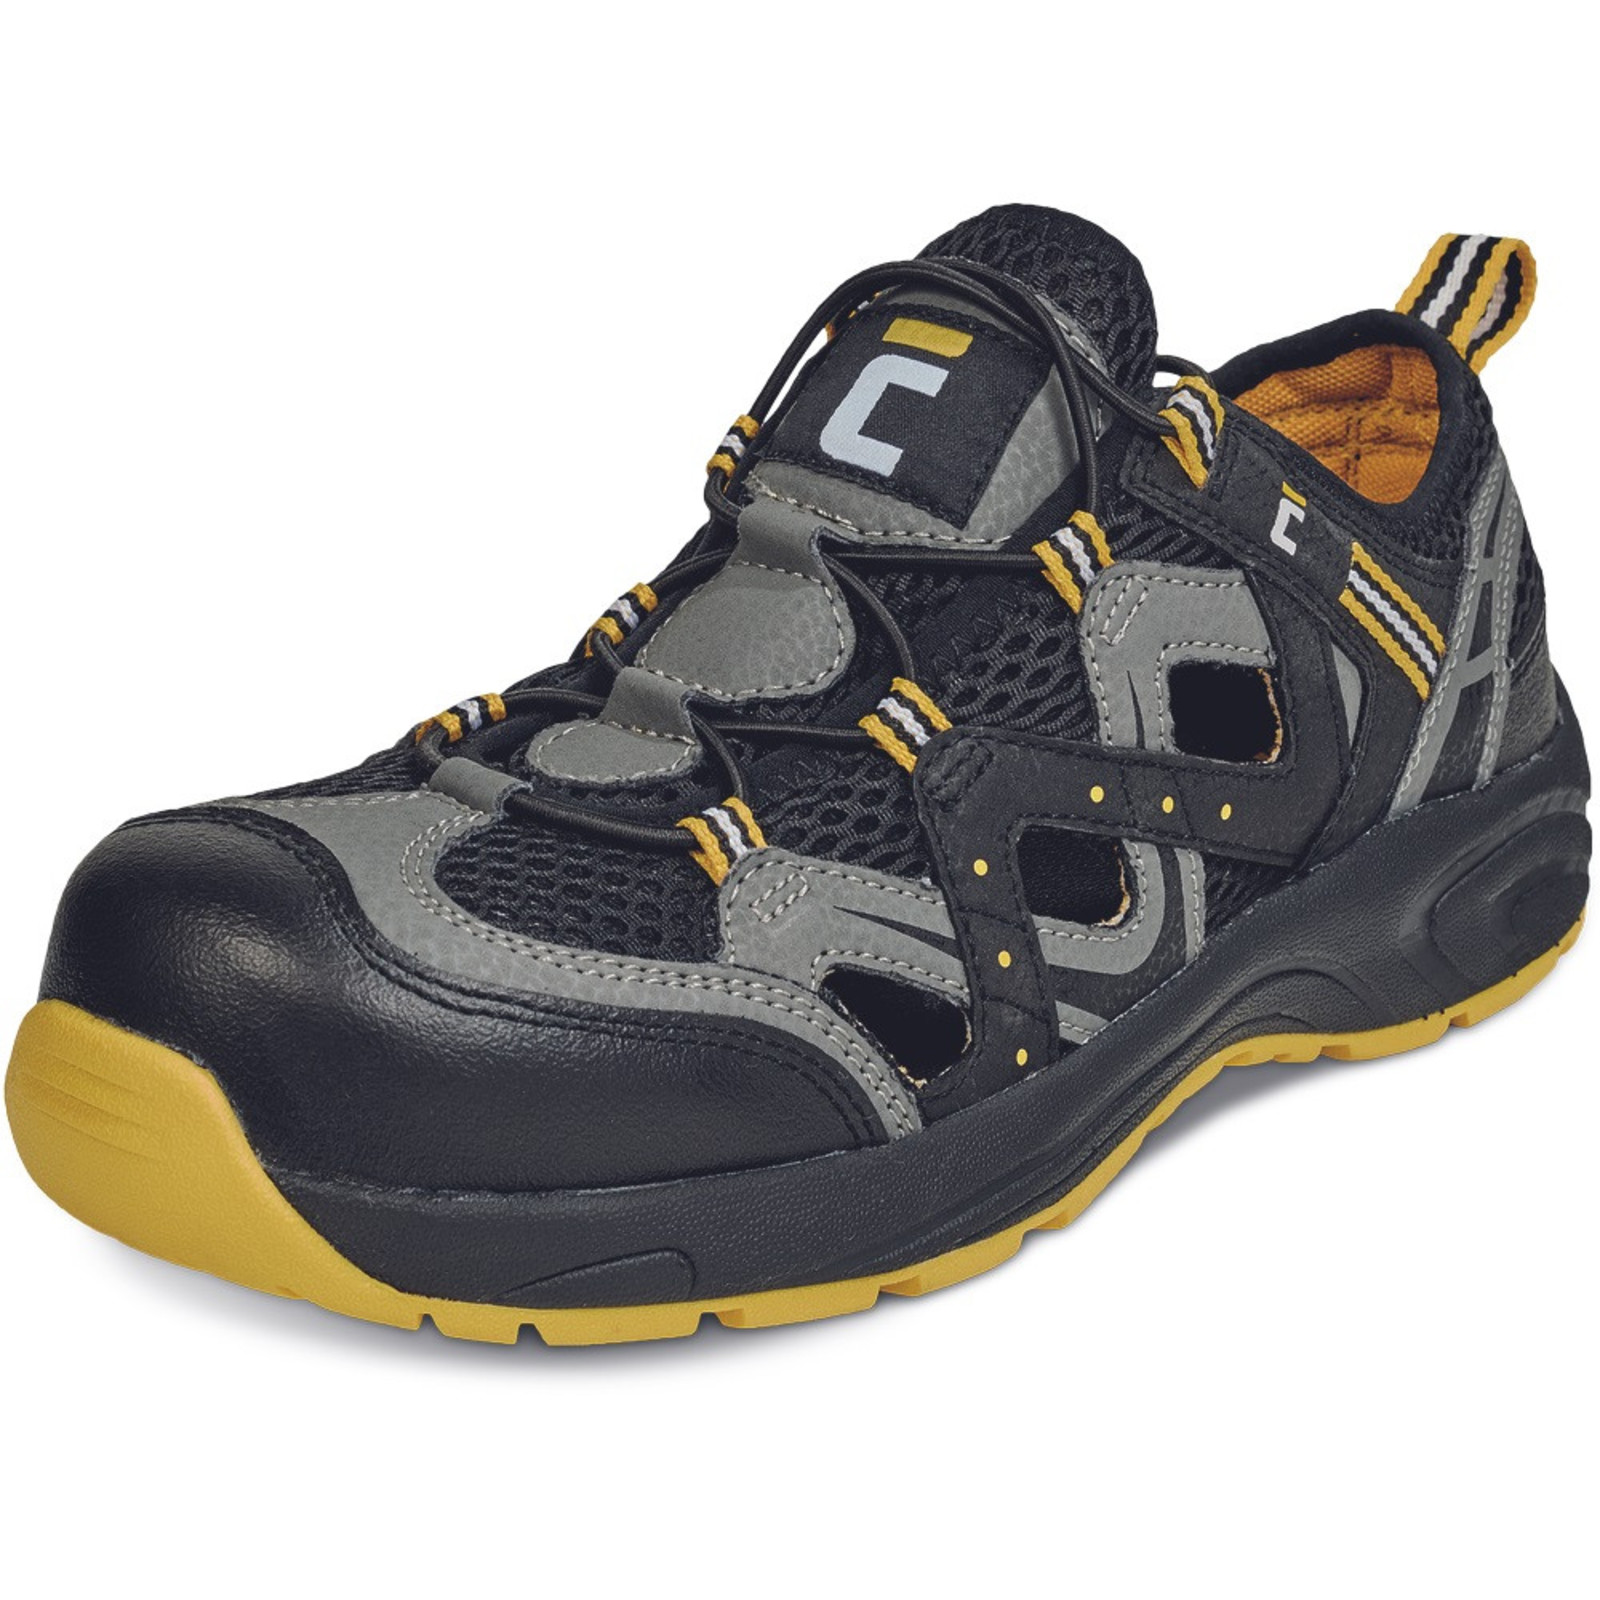 Bezpečnostné sandále Cerva Henford MF S1 SRC - veľkosť: 37, farba: čierna/žltá